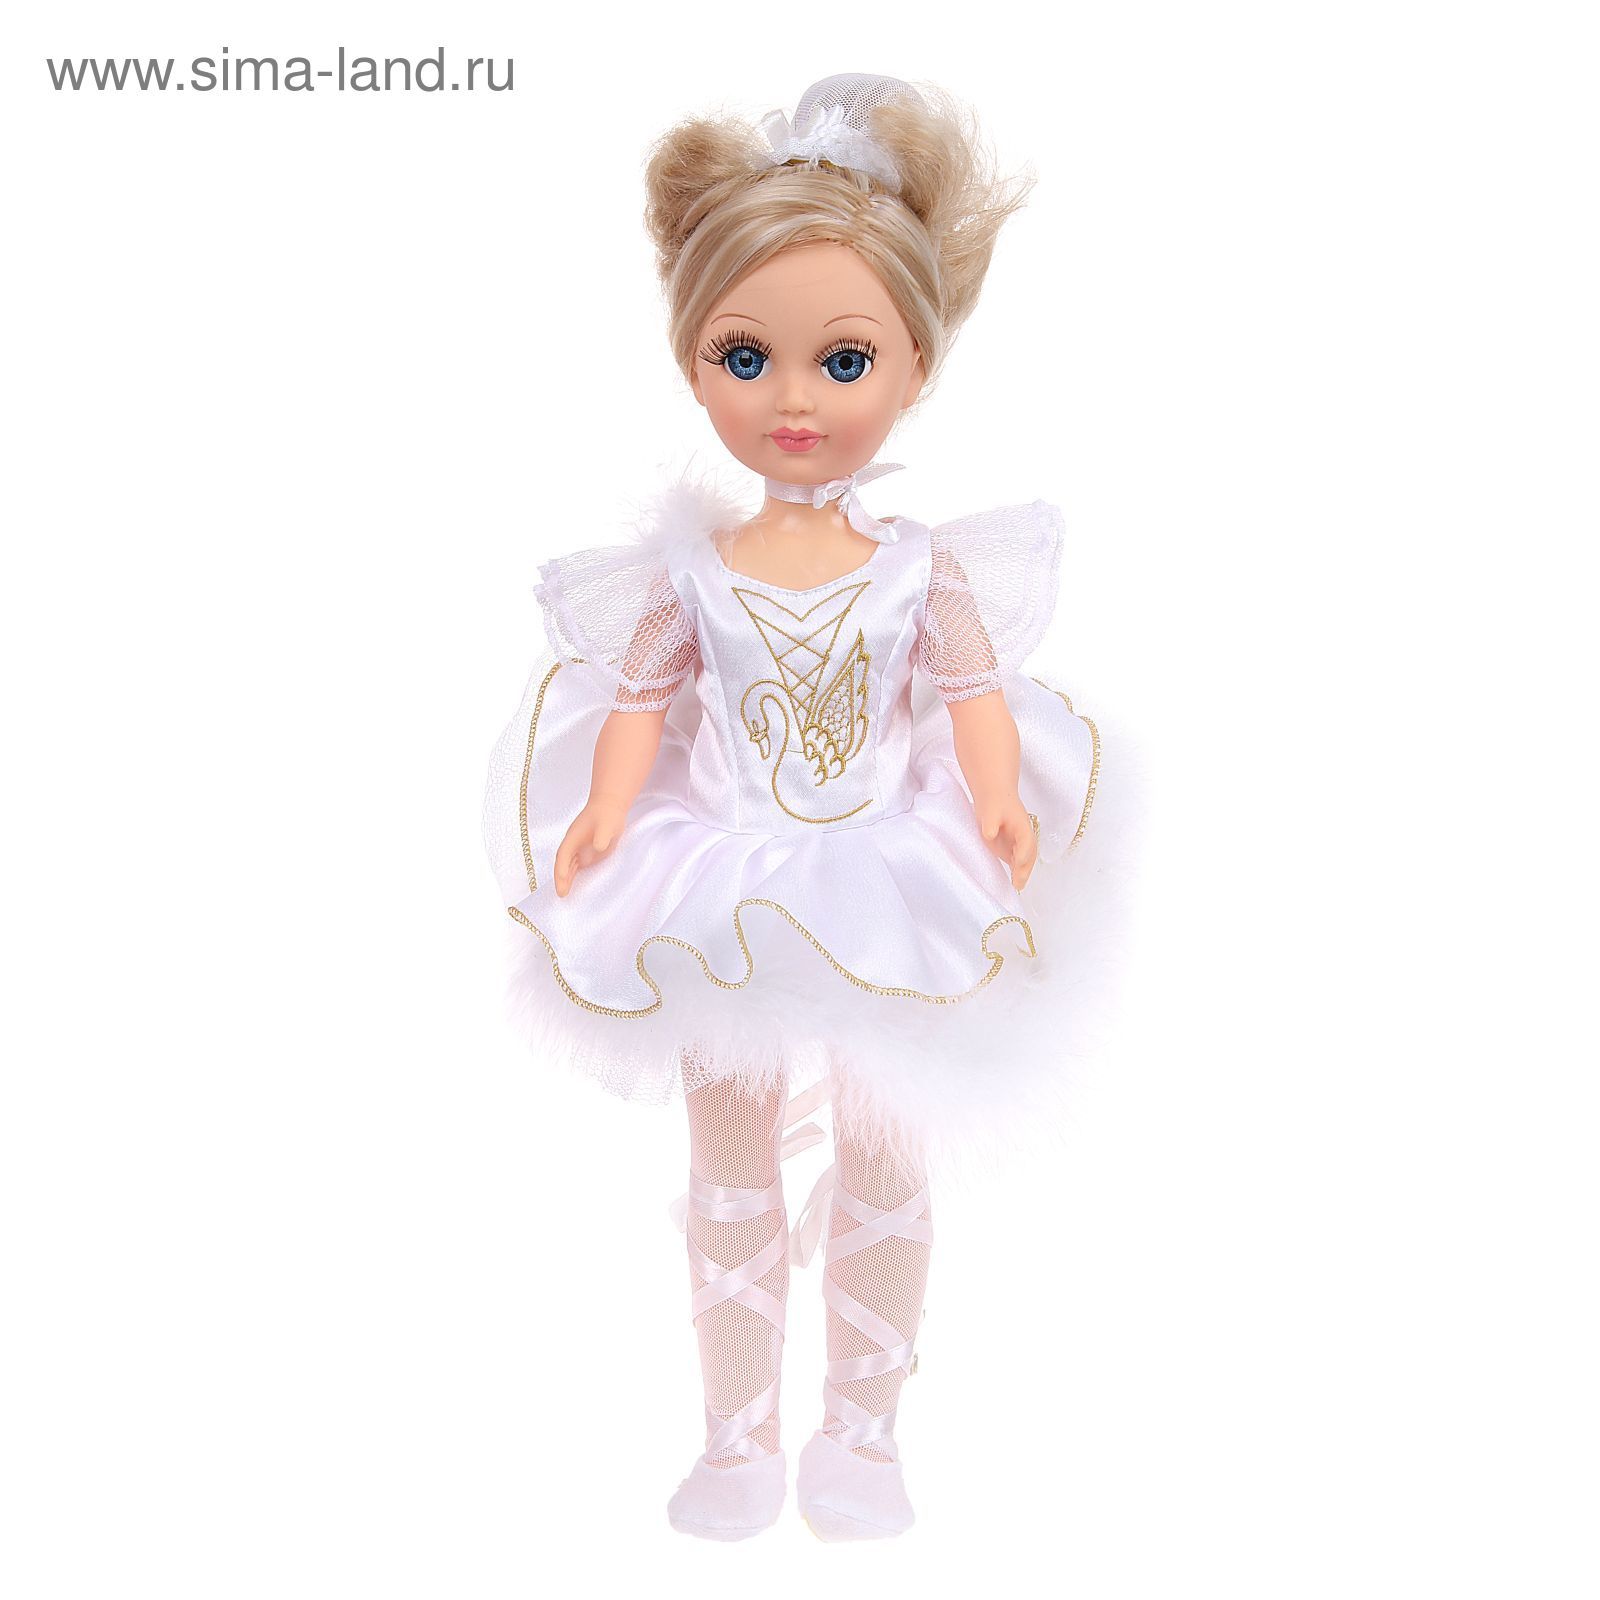 Отзывы о Gotz Платье для балета для кукол 36 см